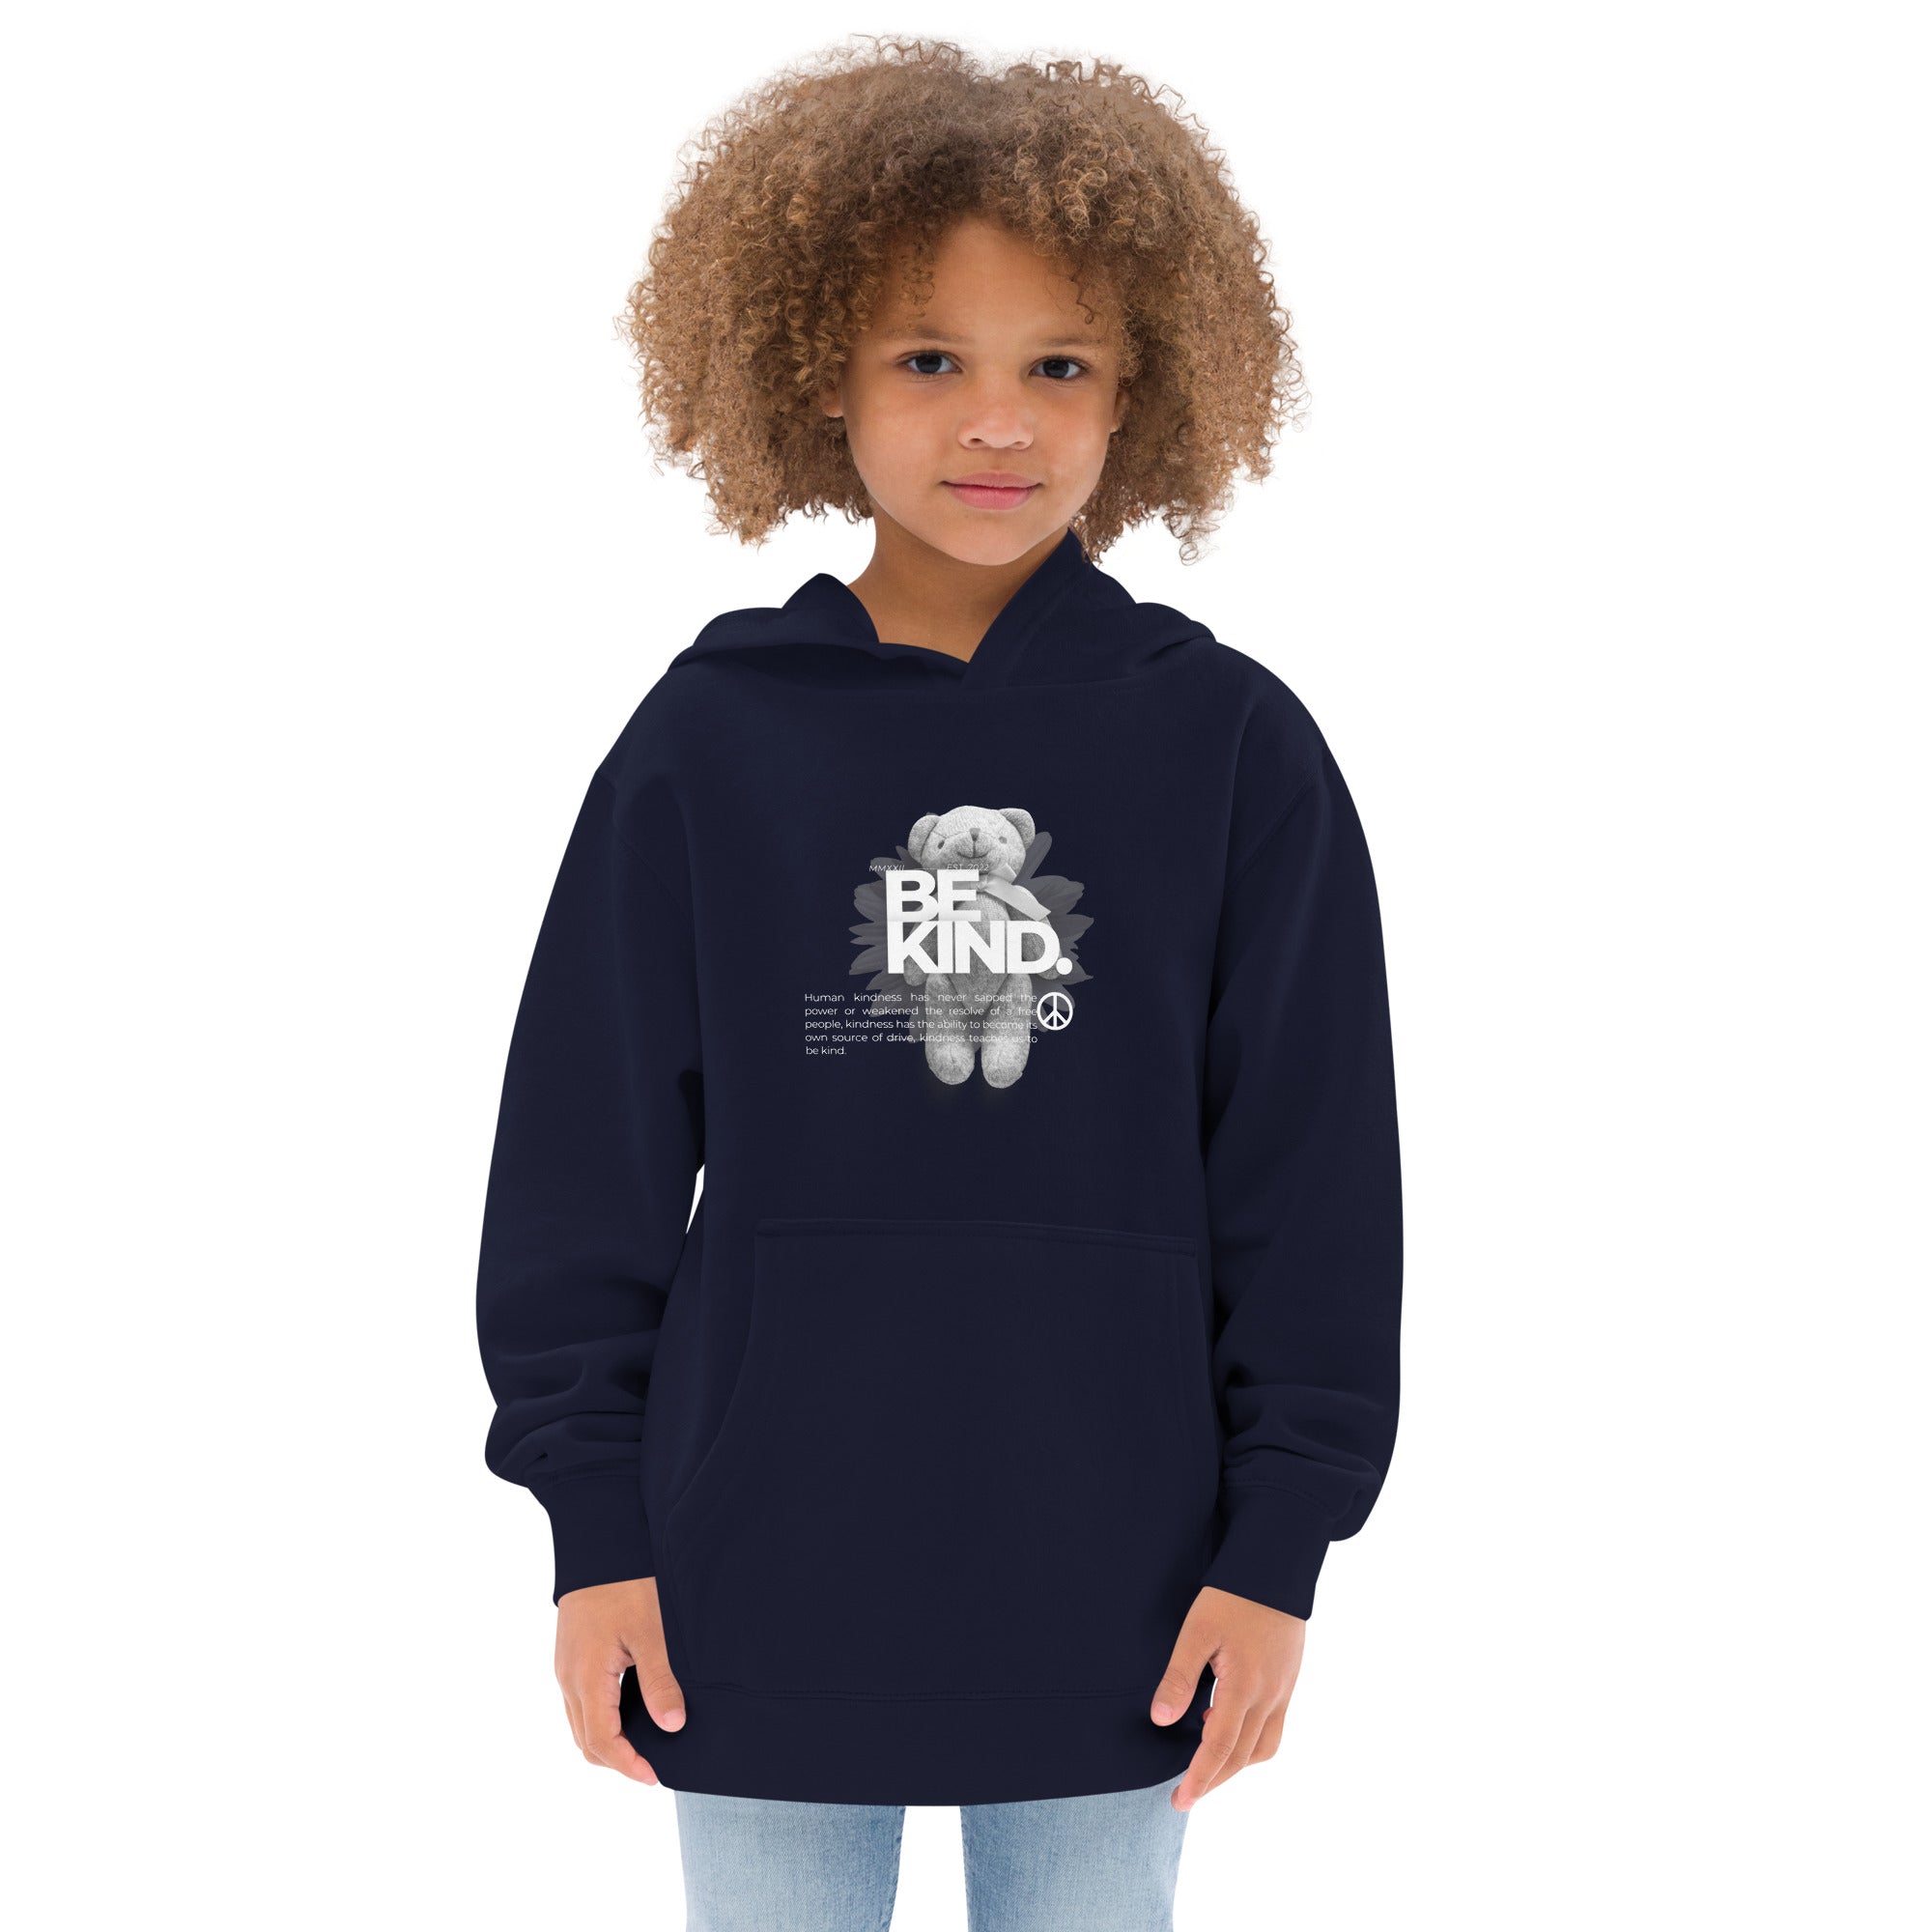 Be kind - Kids fleece hoodie